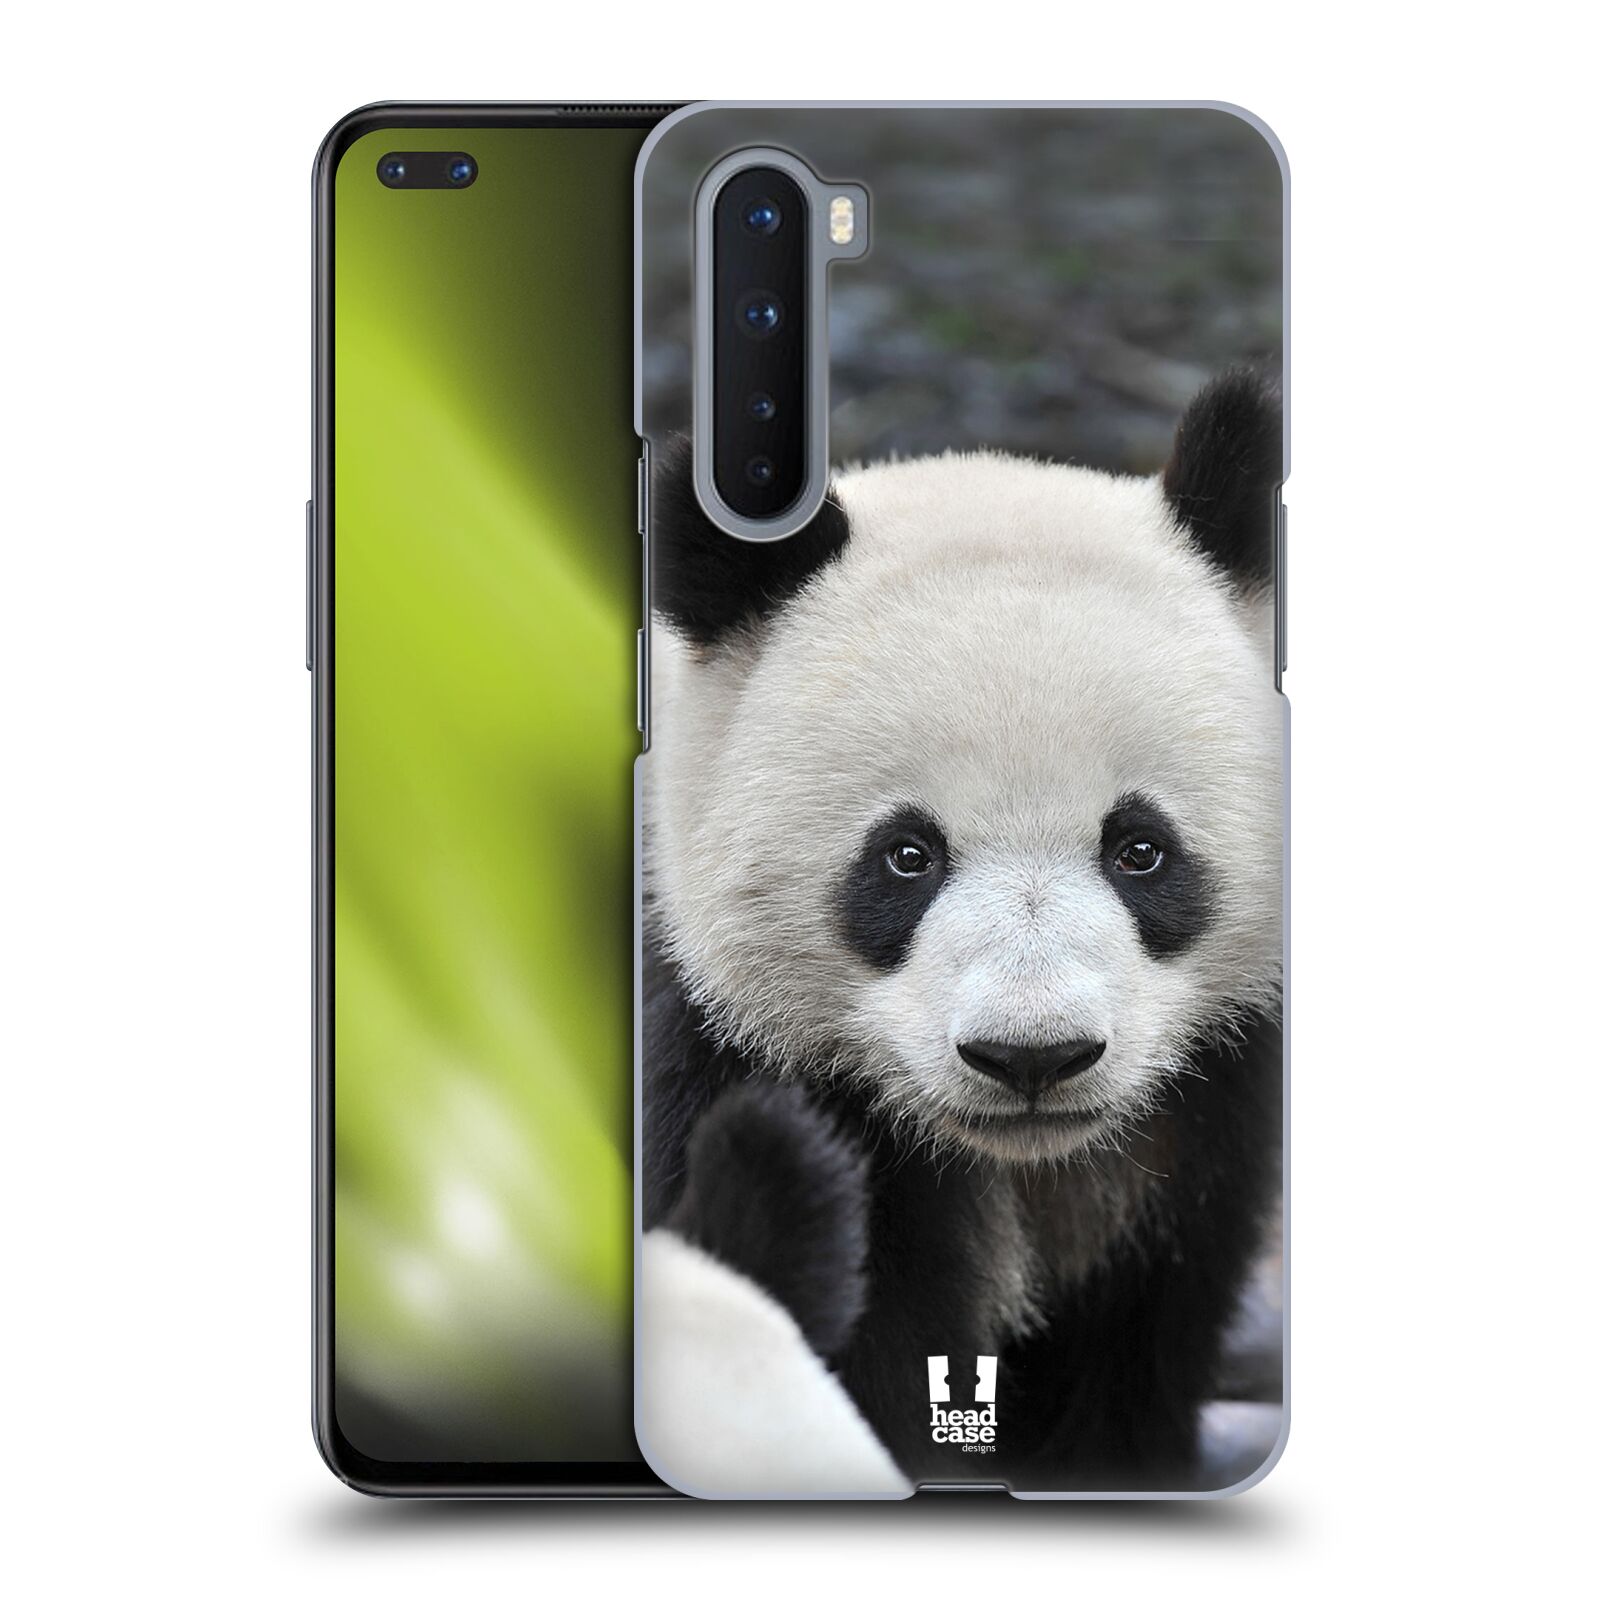 Zadní obal pro mobil OnePlus Nord - HEAD CASE - Svět zvířat medvěd panda